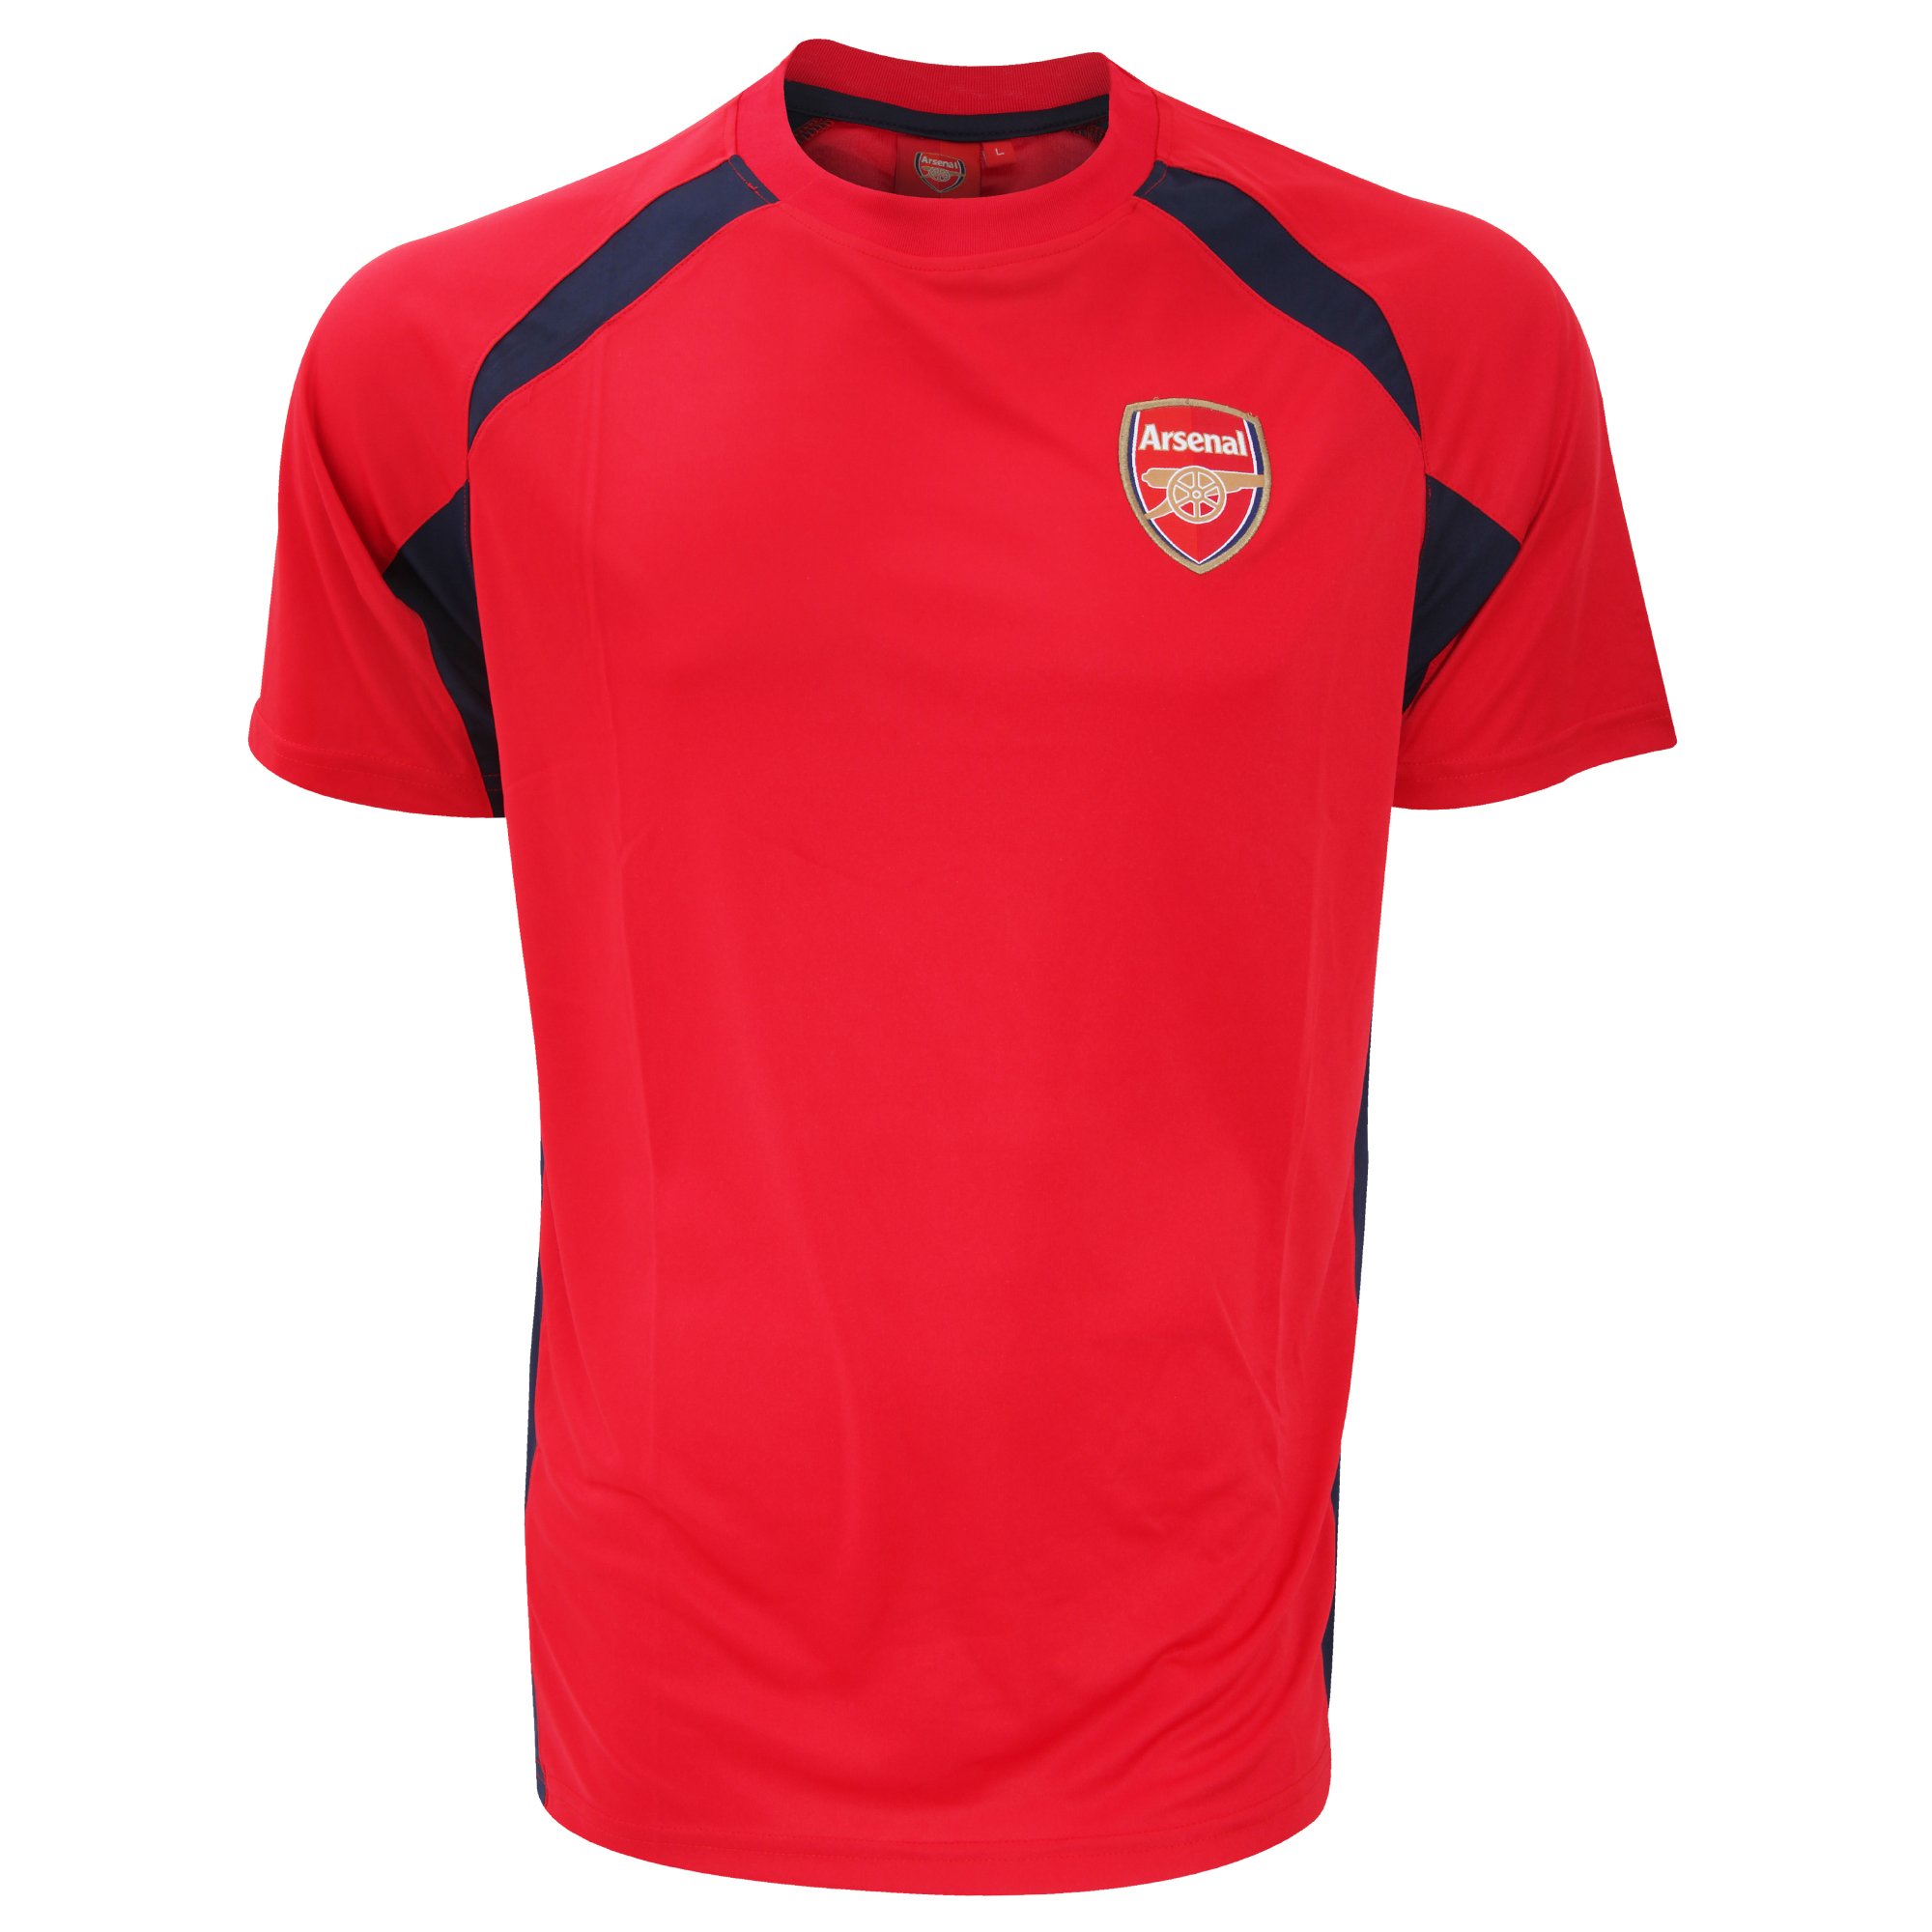 Arsenal FC Herren-T-Shirt mit Fußballwappen, offizielles Lizenzprodukt